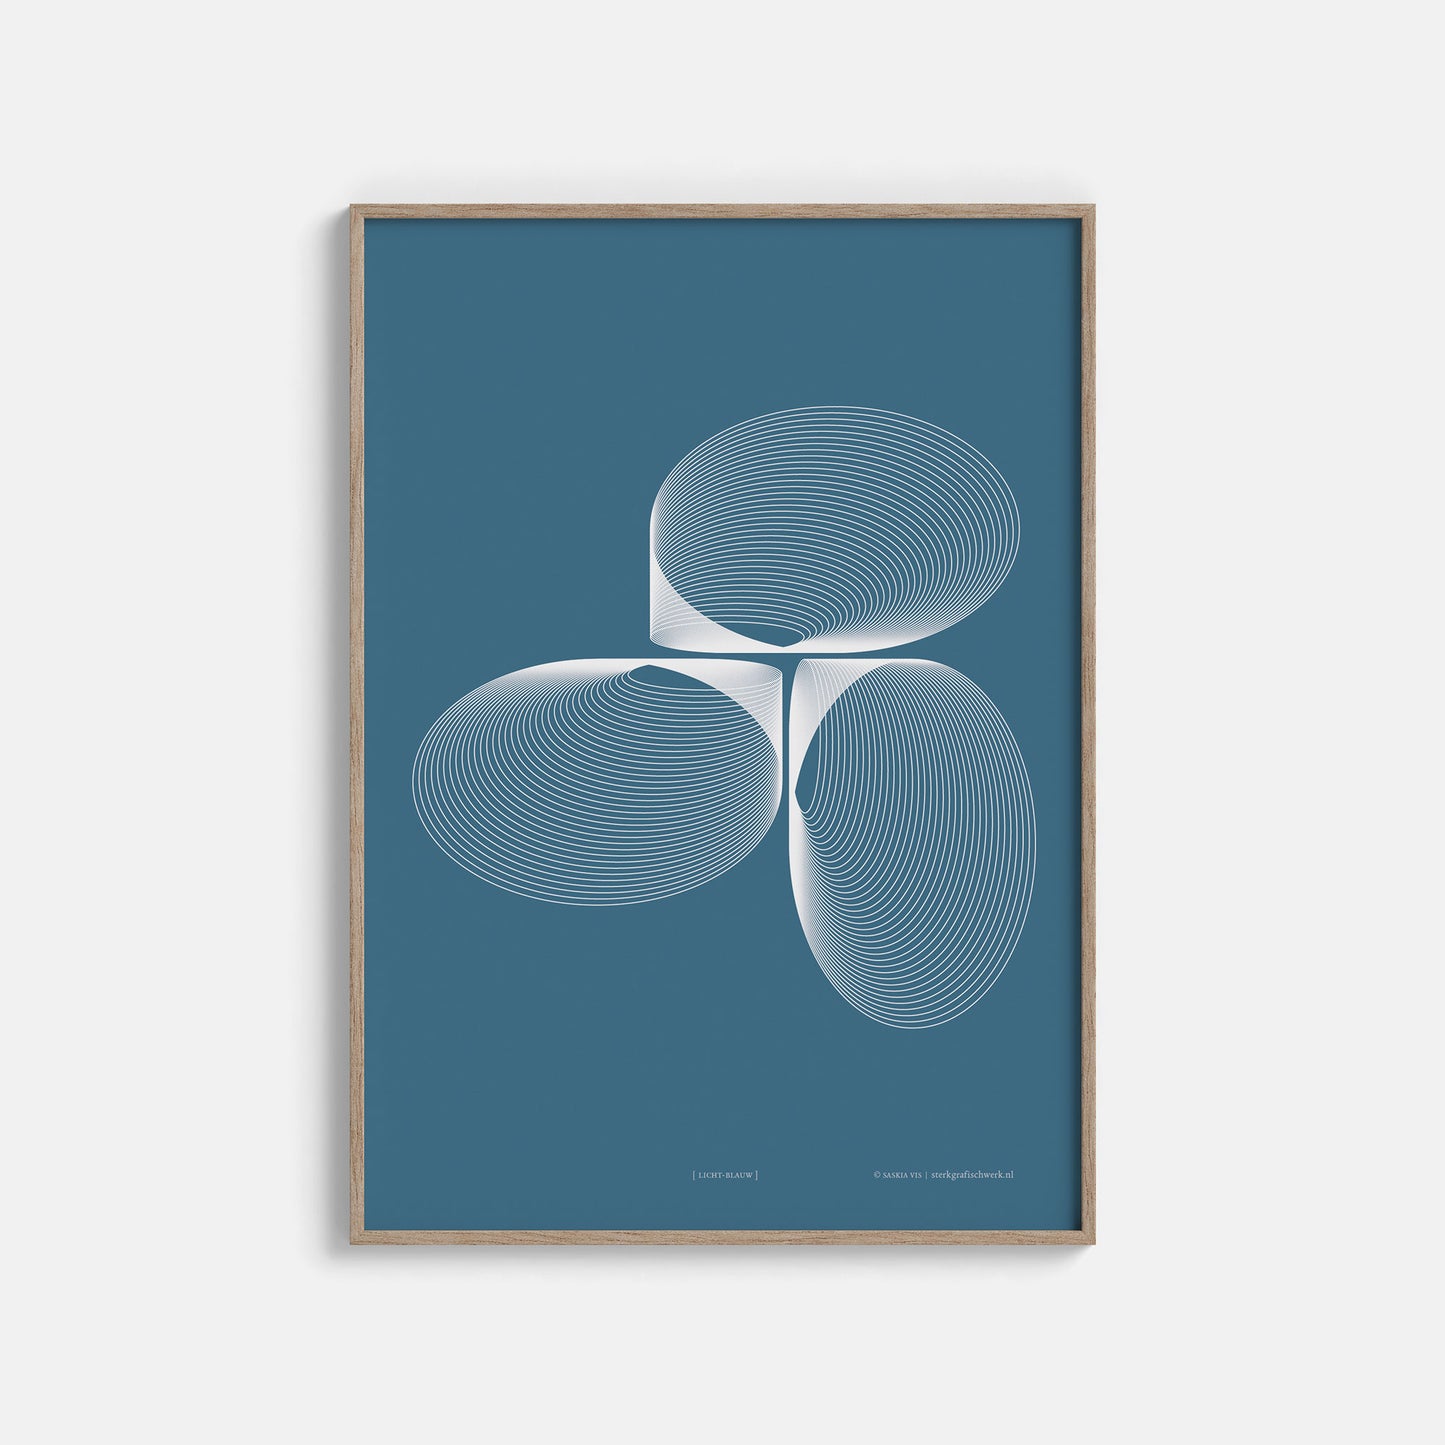 Productafbeelding, poster "licht-blauw", ingelijst hangend aan een witte wand, een overzichtsfoto 